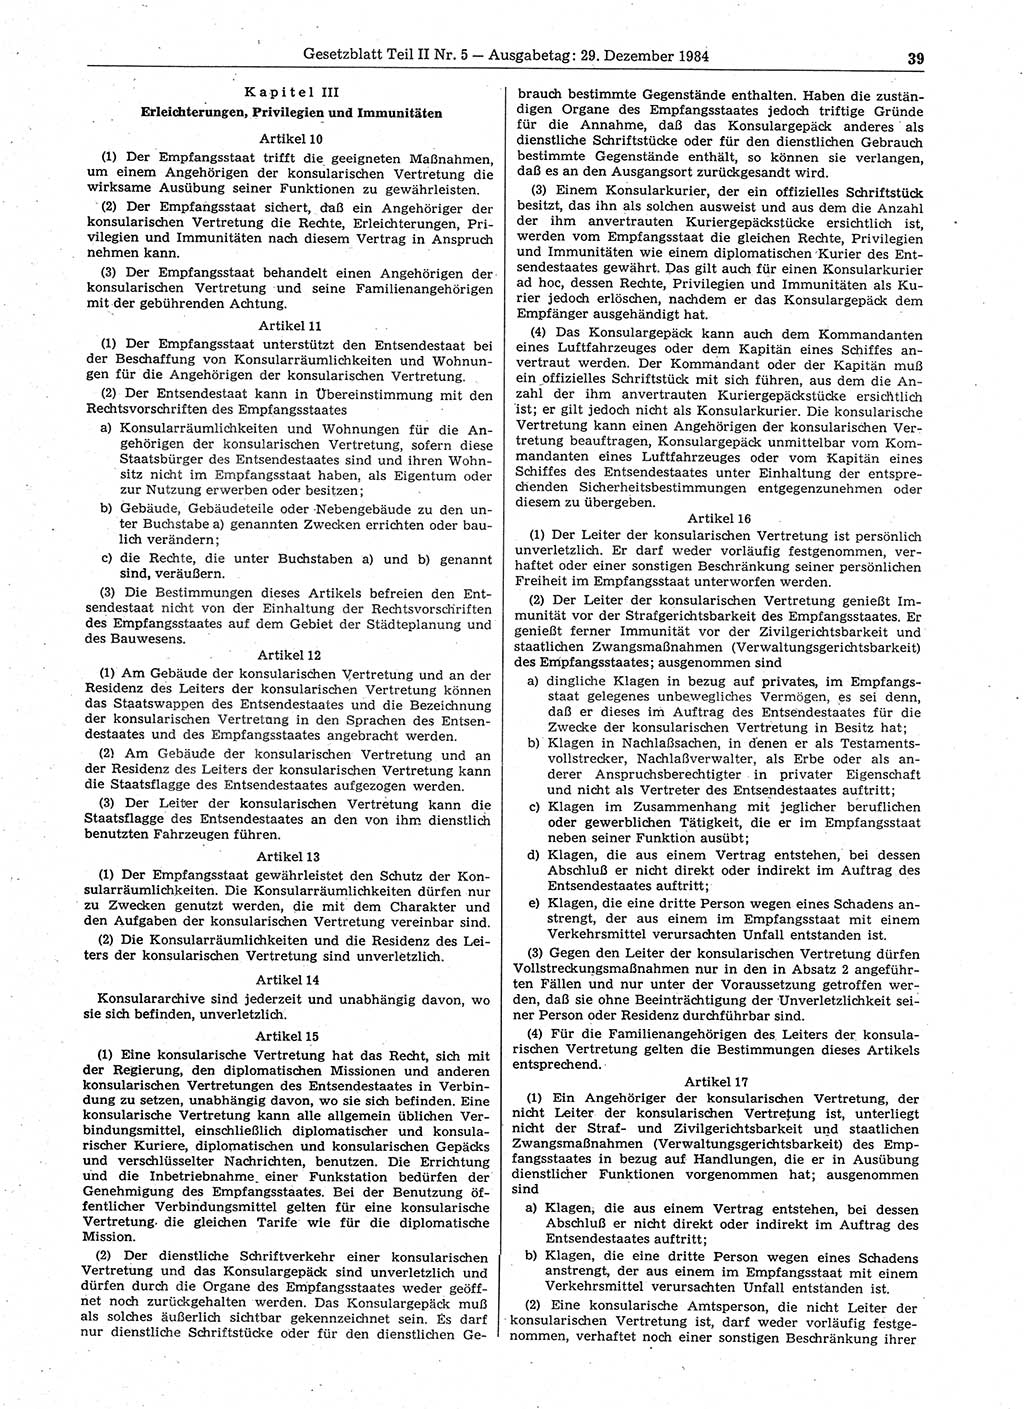 Gesetzblatt (GBl.) der Deutschen Demokratischen Republik (DDR) Teil ⅠⅠ 1984, Seite 39 (GBl. DDR ⅠⅠ 1984, S. 39)